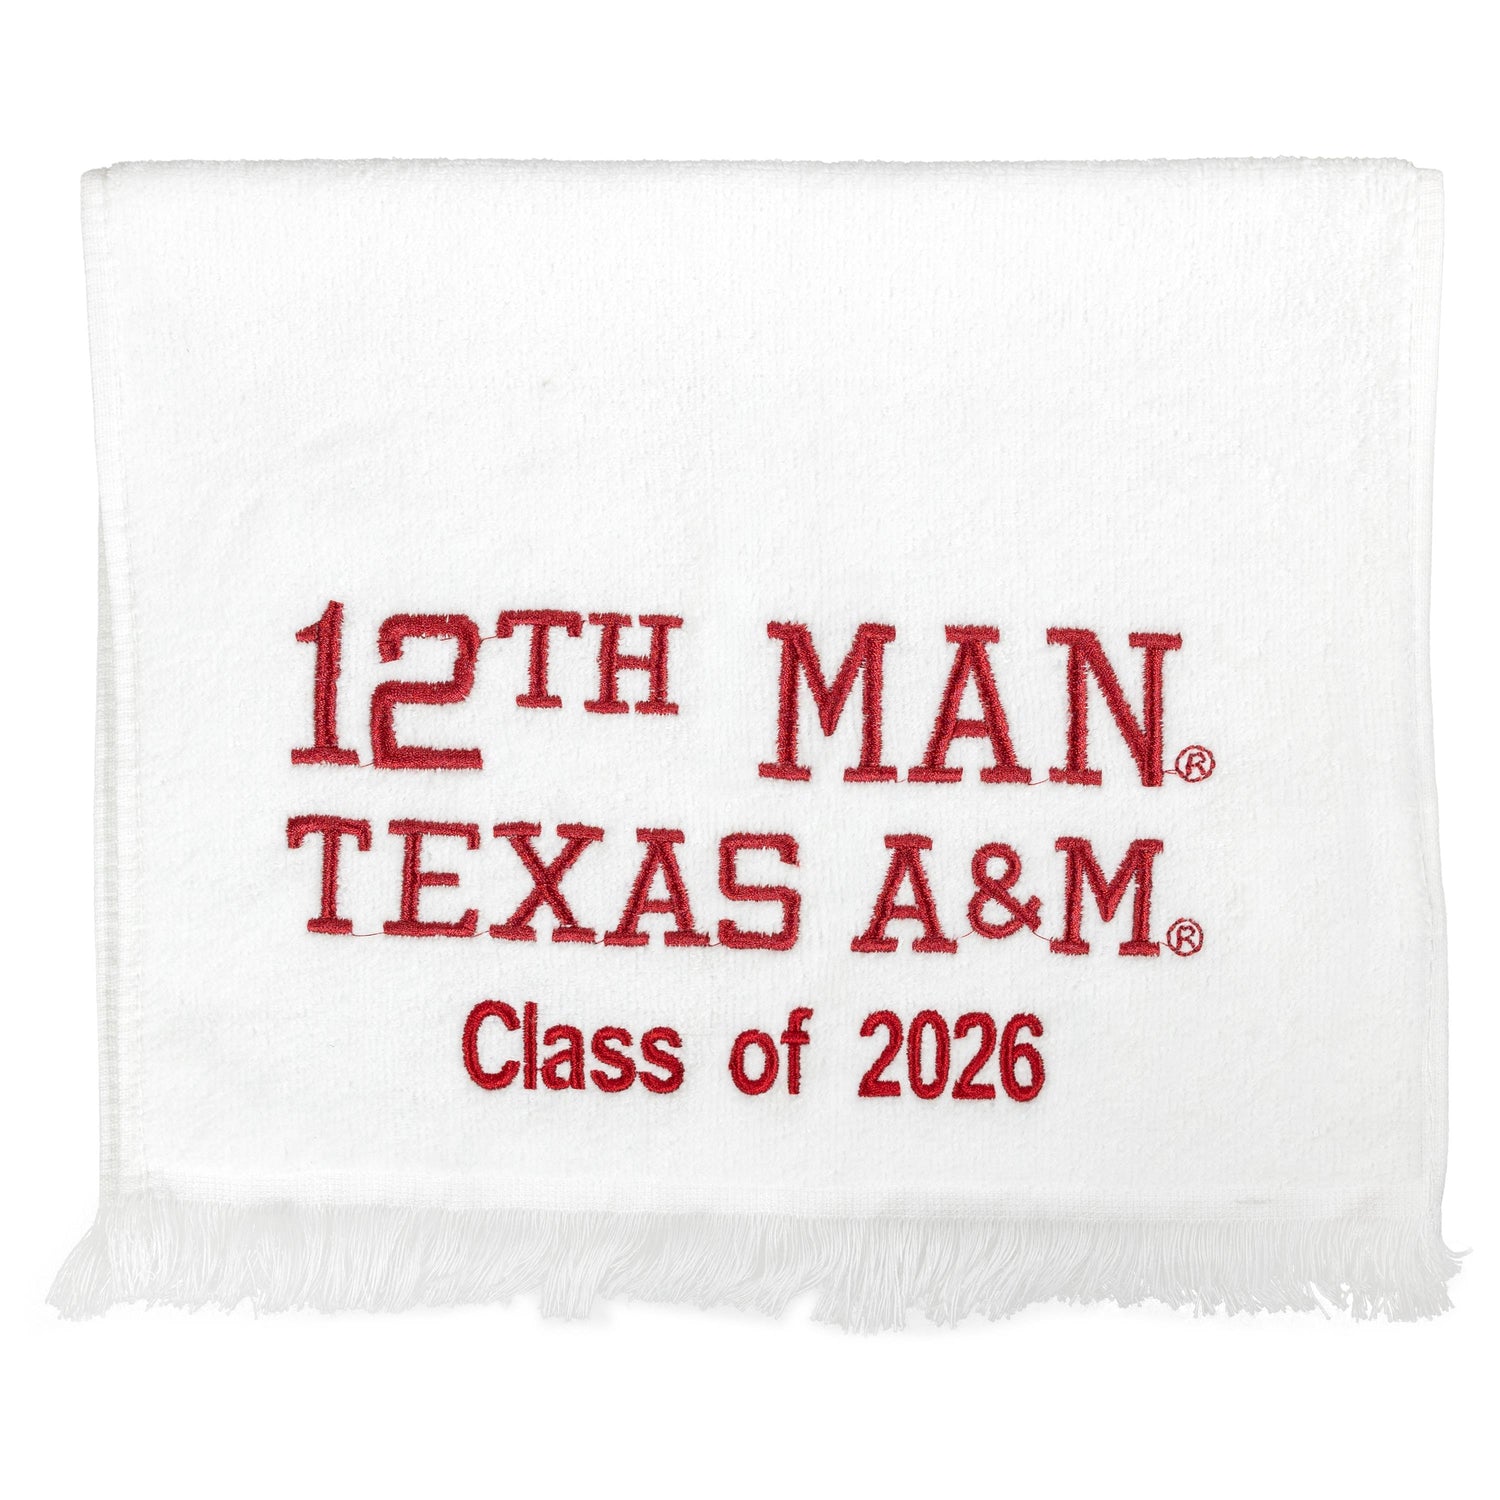 Texas A&M 2026 12th Man Towel